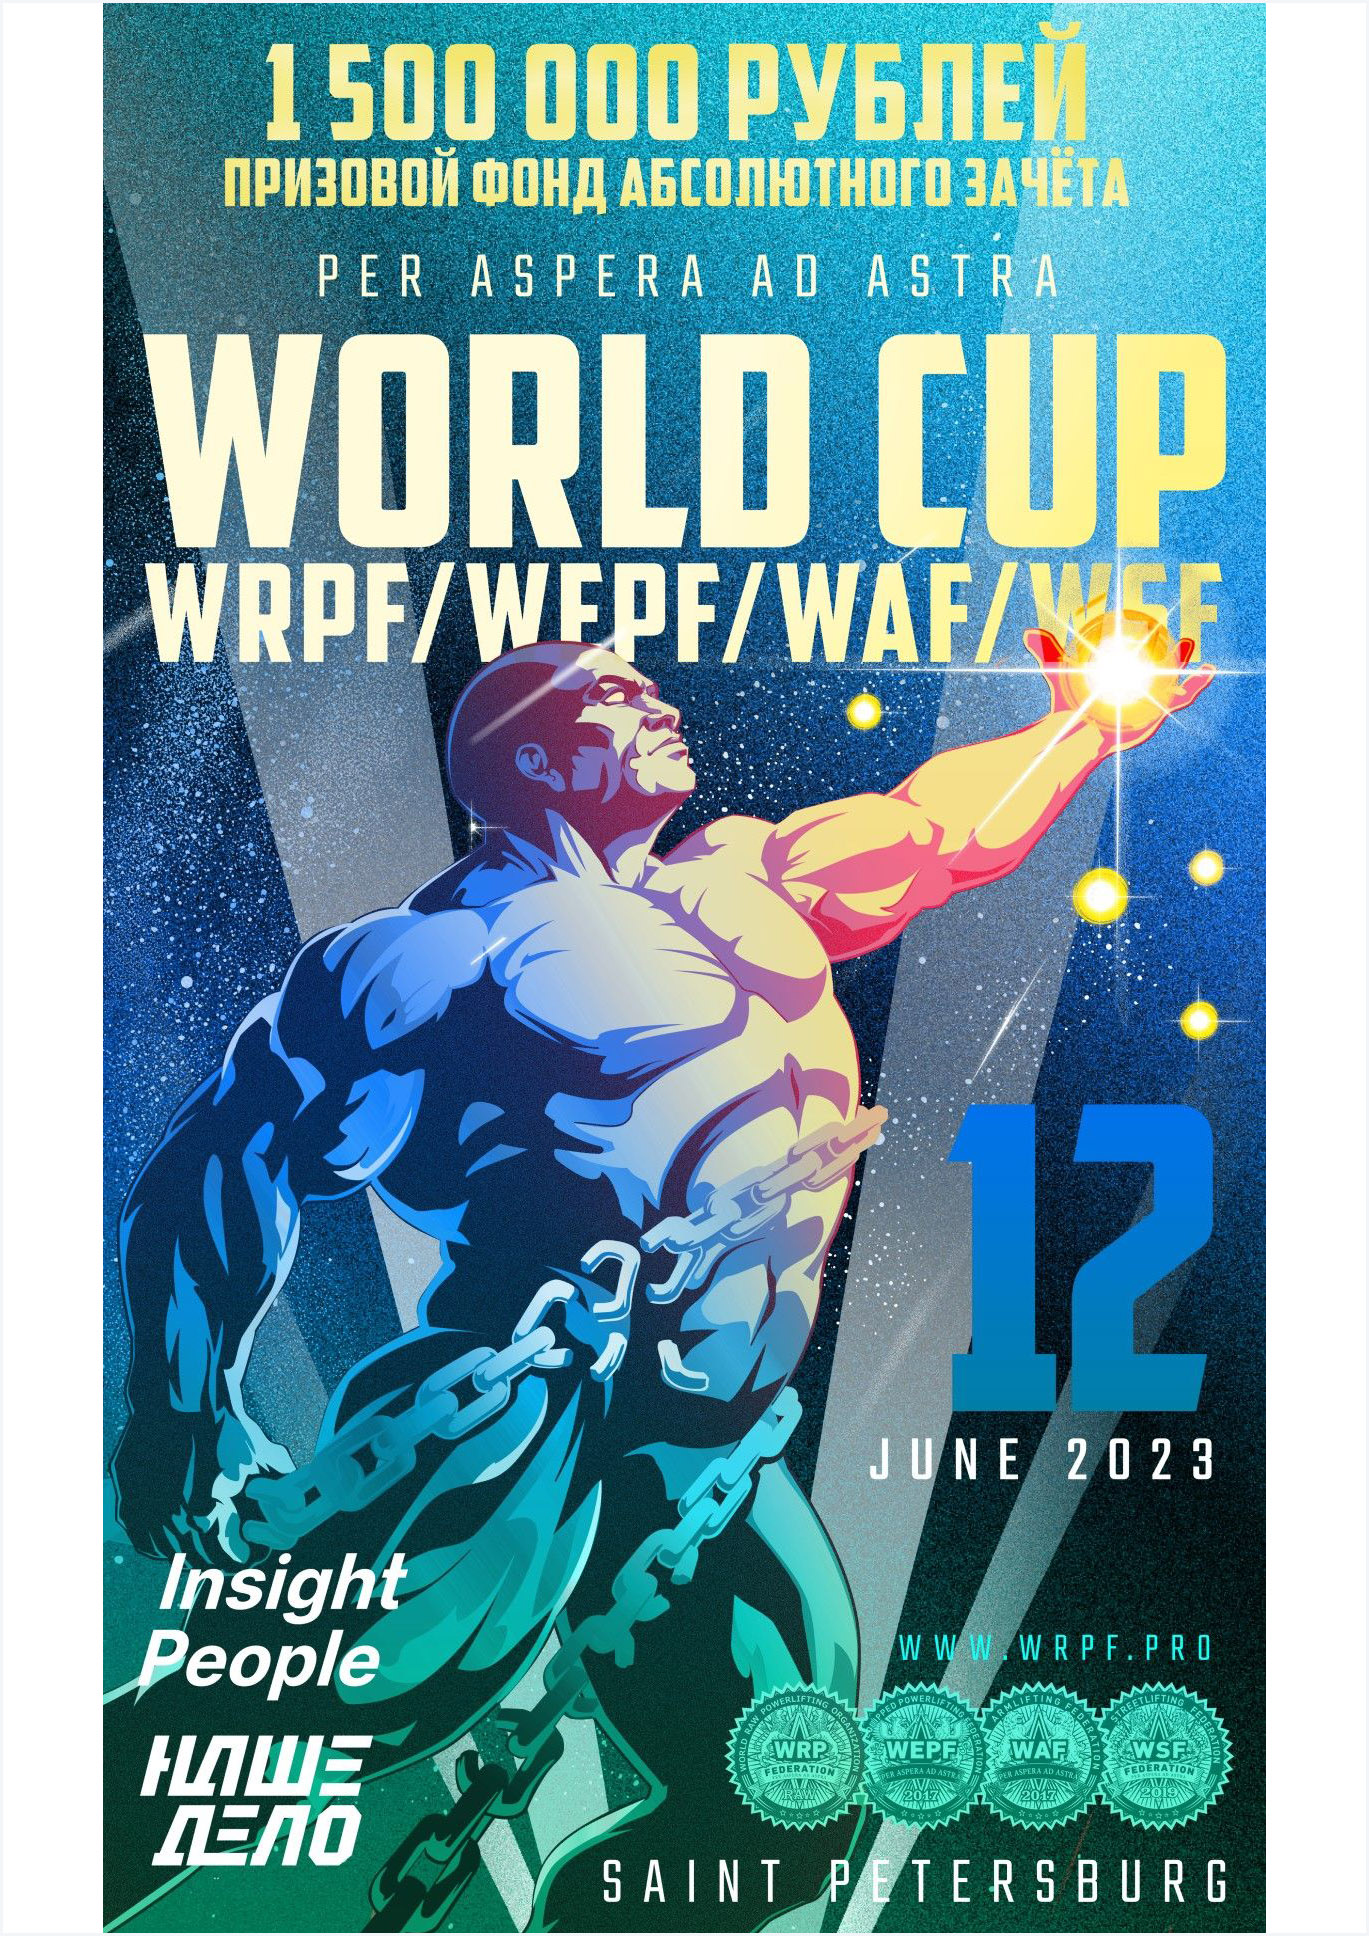 Кубок мира по пауэрлифтингу федерации WRPF